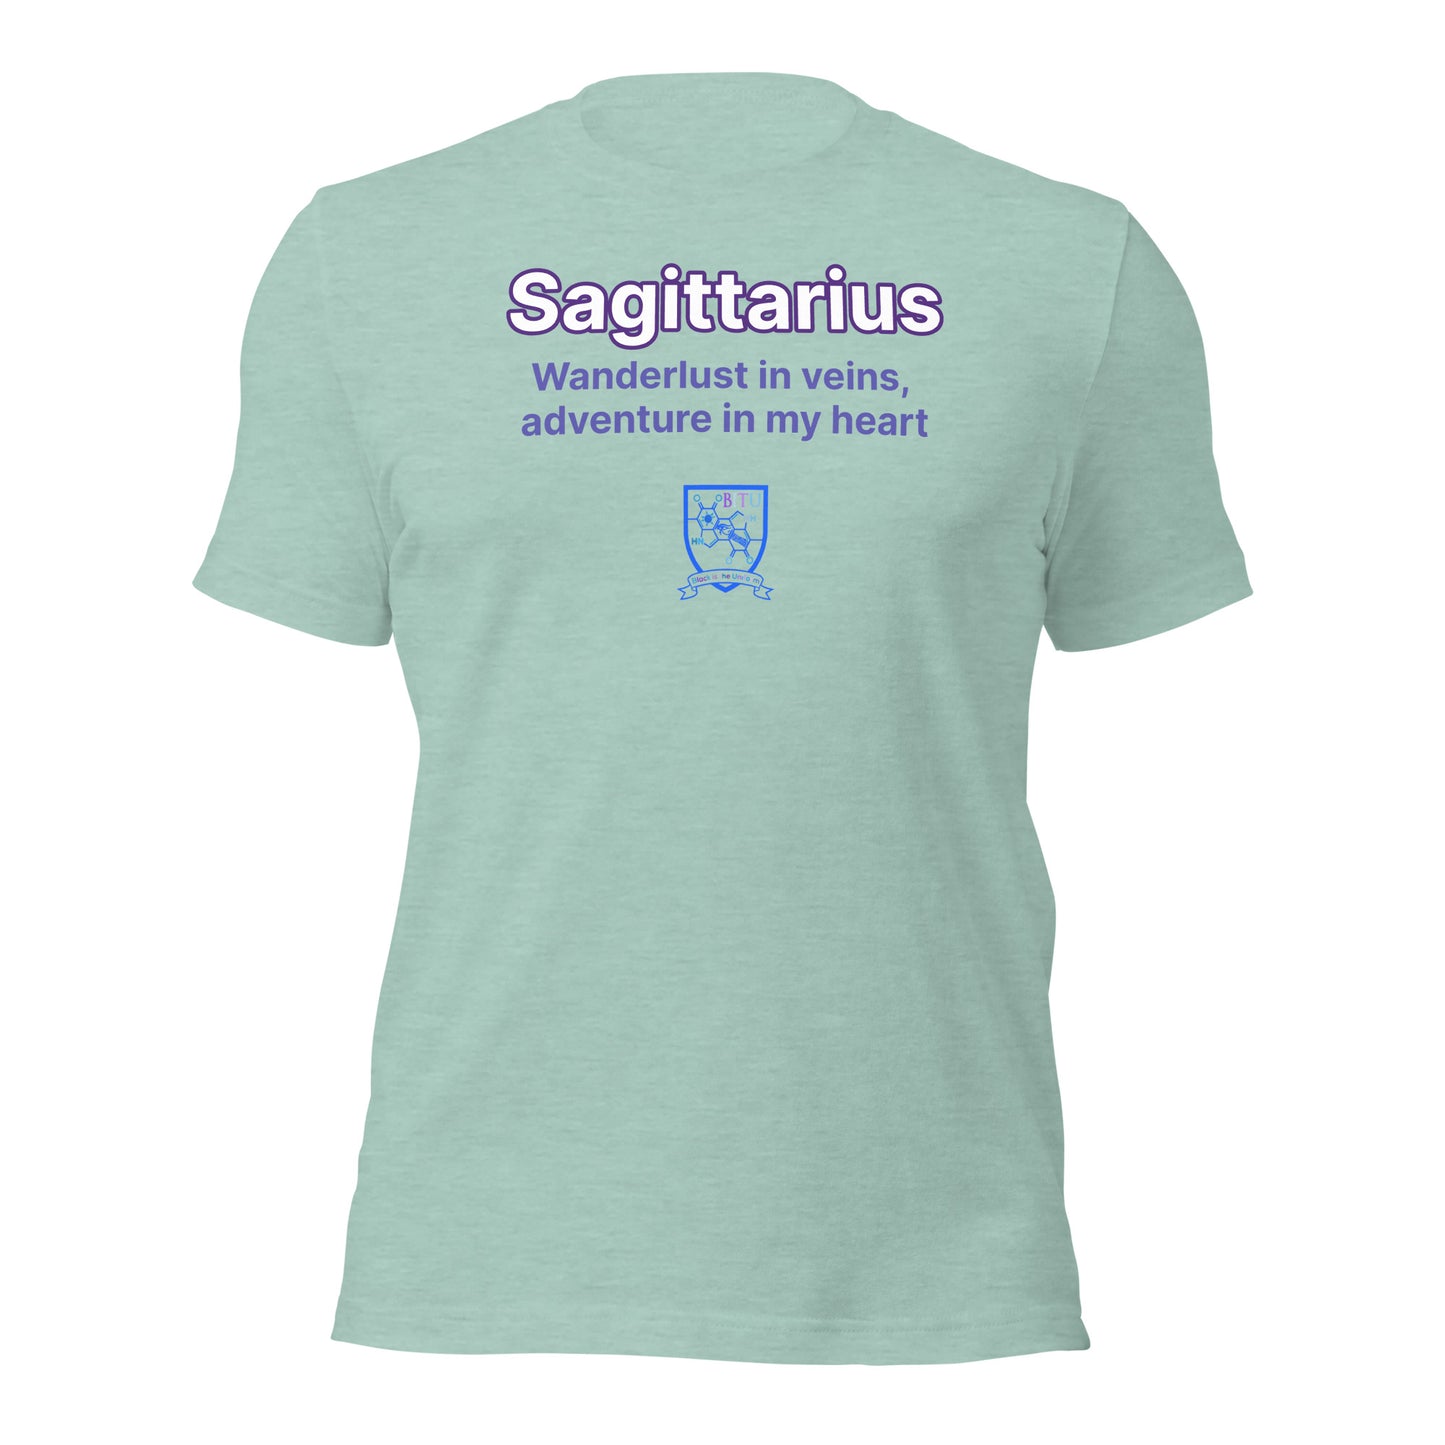 Sagittarius - Wanderlust in veins, adventure in my heart